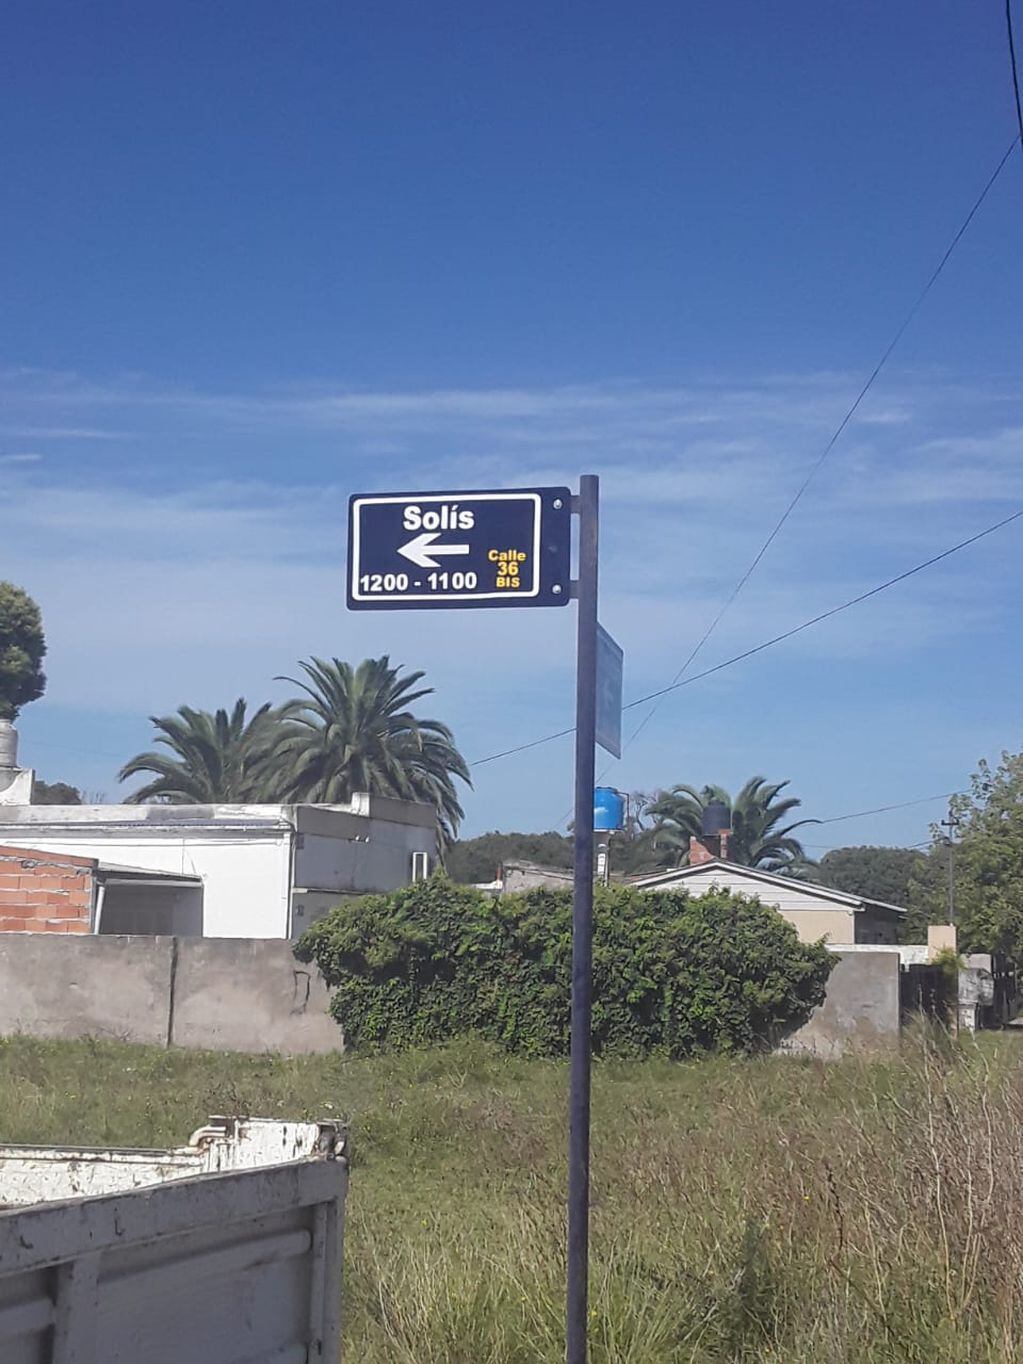 Personal de Obras y Servicios Públicos  de la Municipalidad de Tres Arroyos, colocaron carteles indicadores de calles sobre Av. Libertad